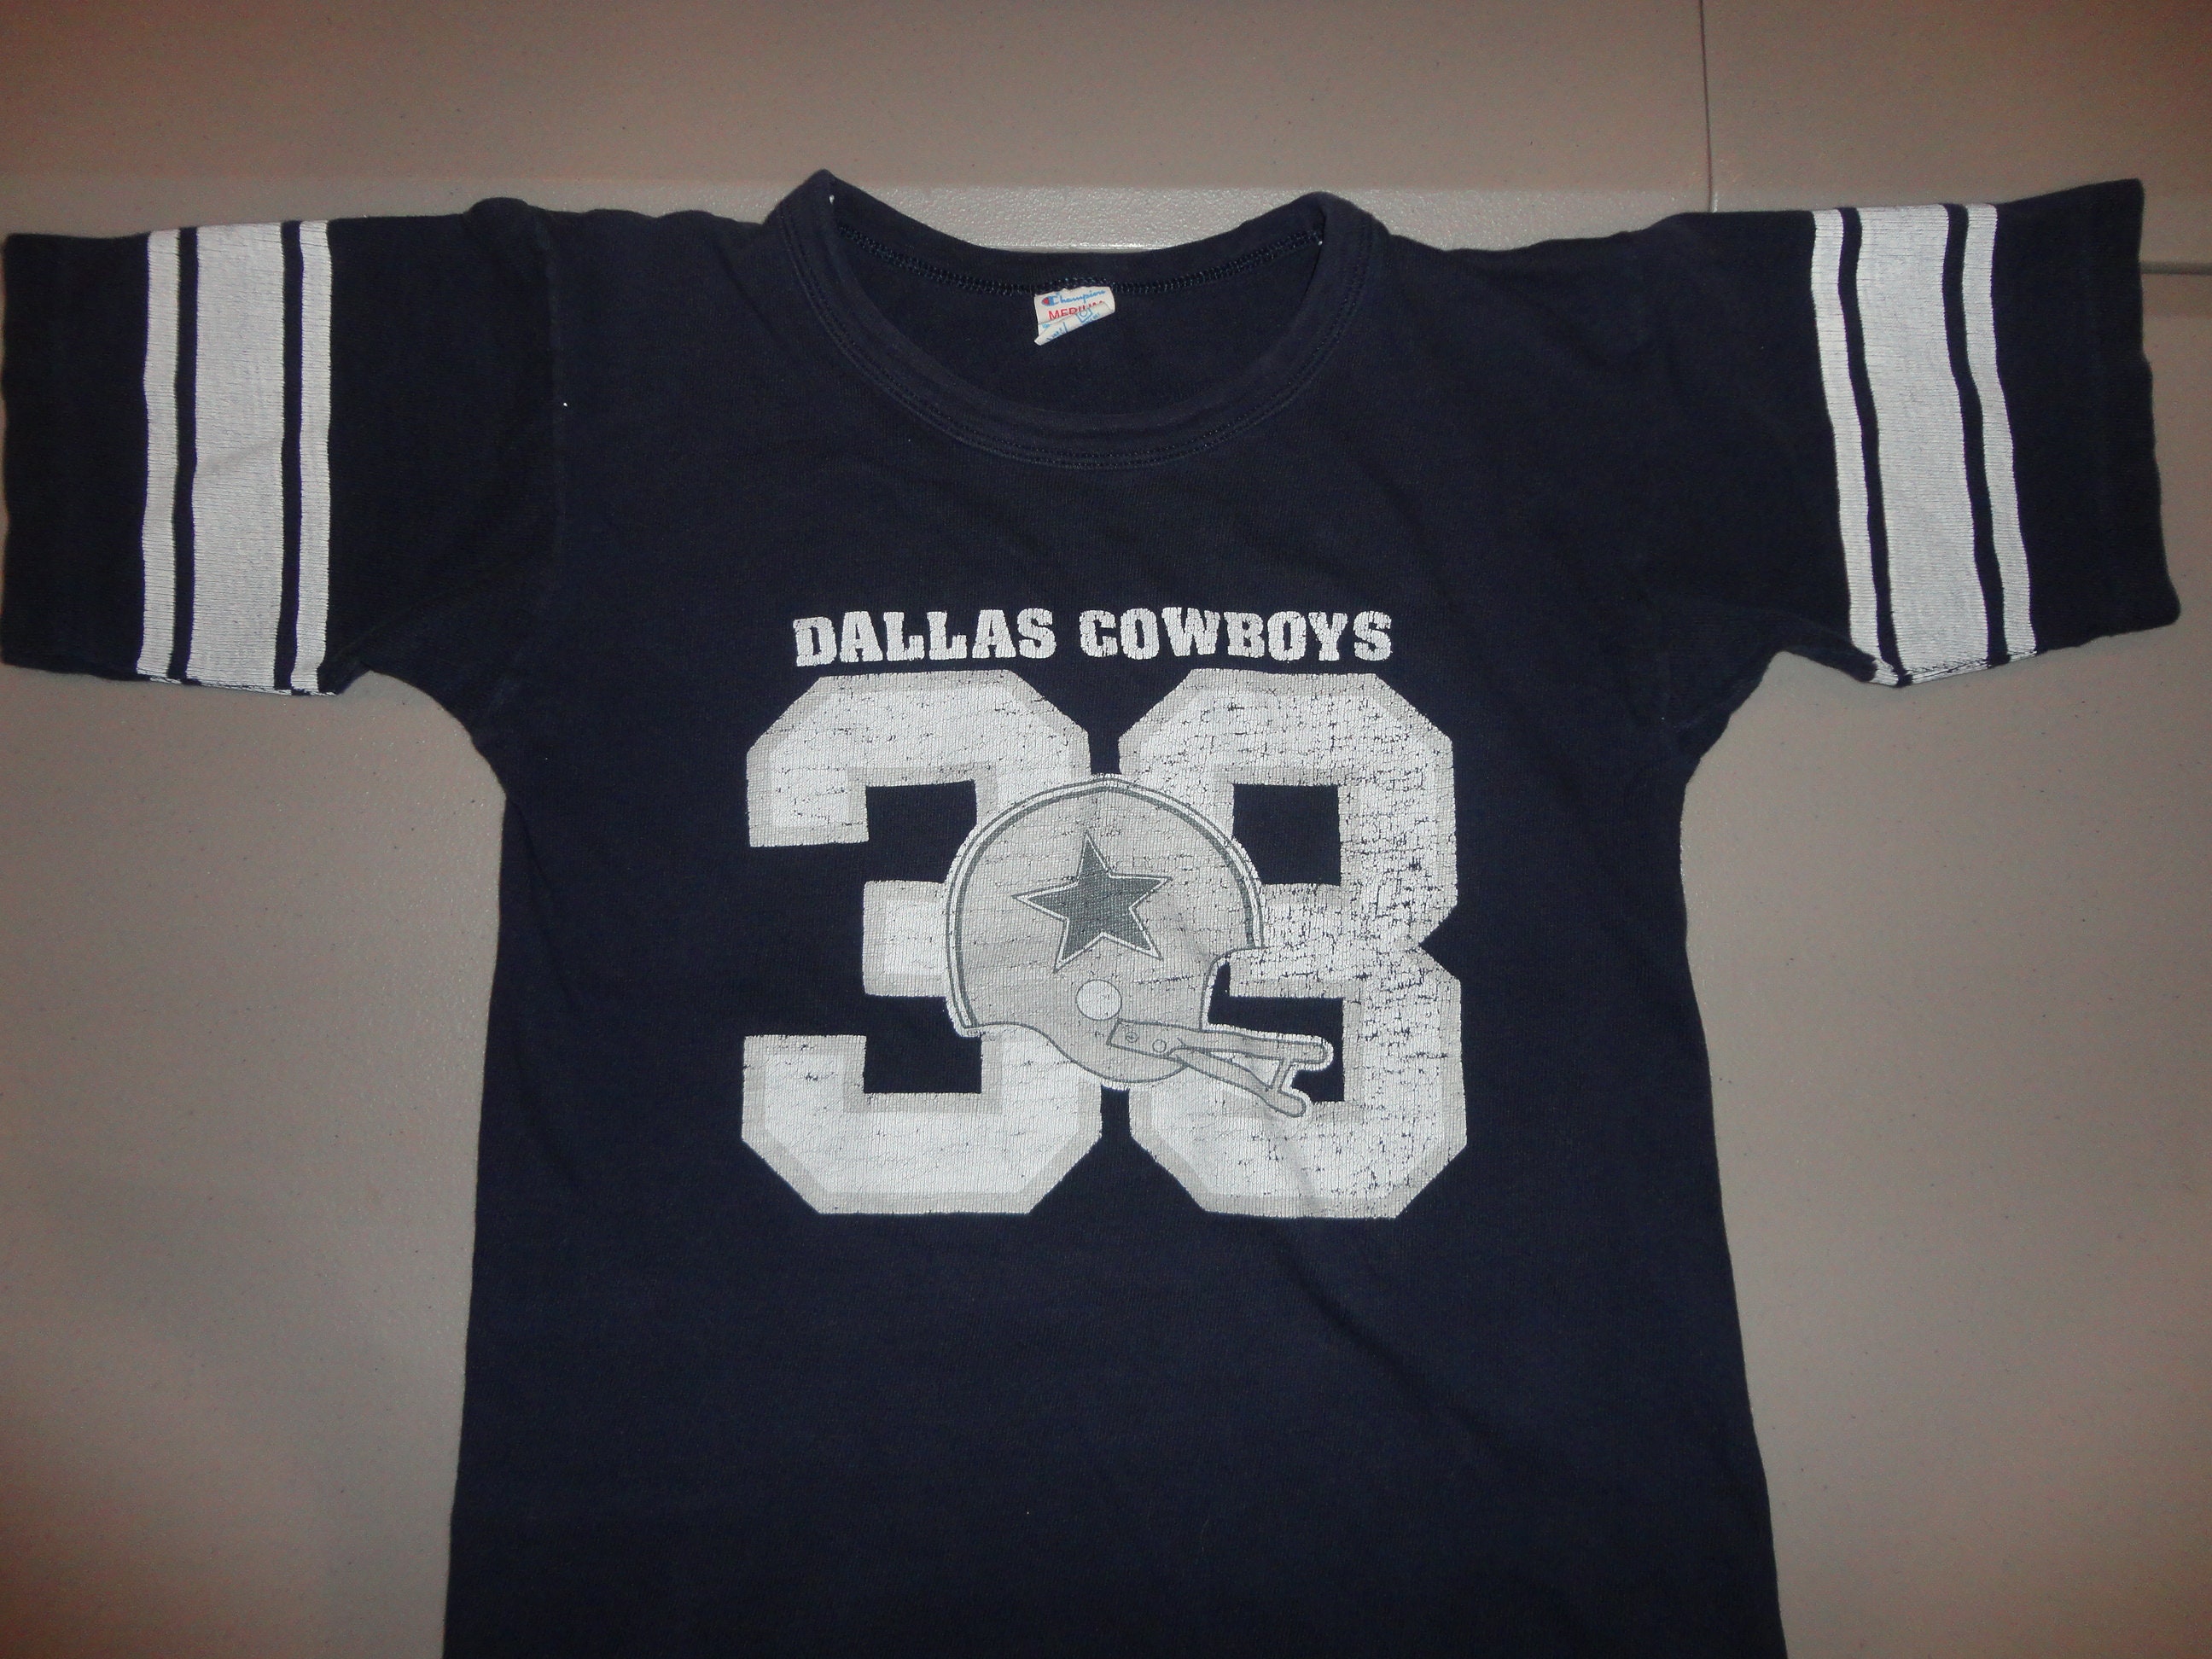 Dallas Cowboys Tony Dorsett #33 Nike Vapor Throwback Limited Jersey